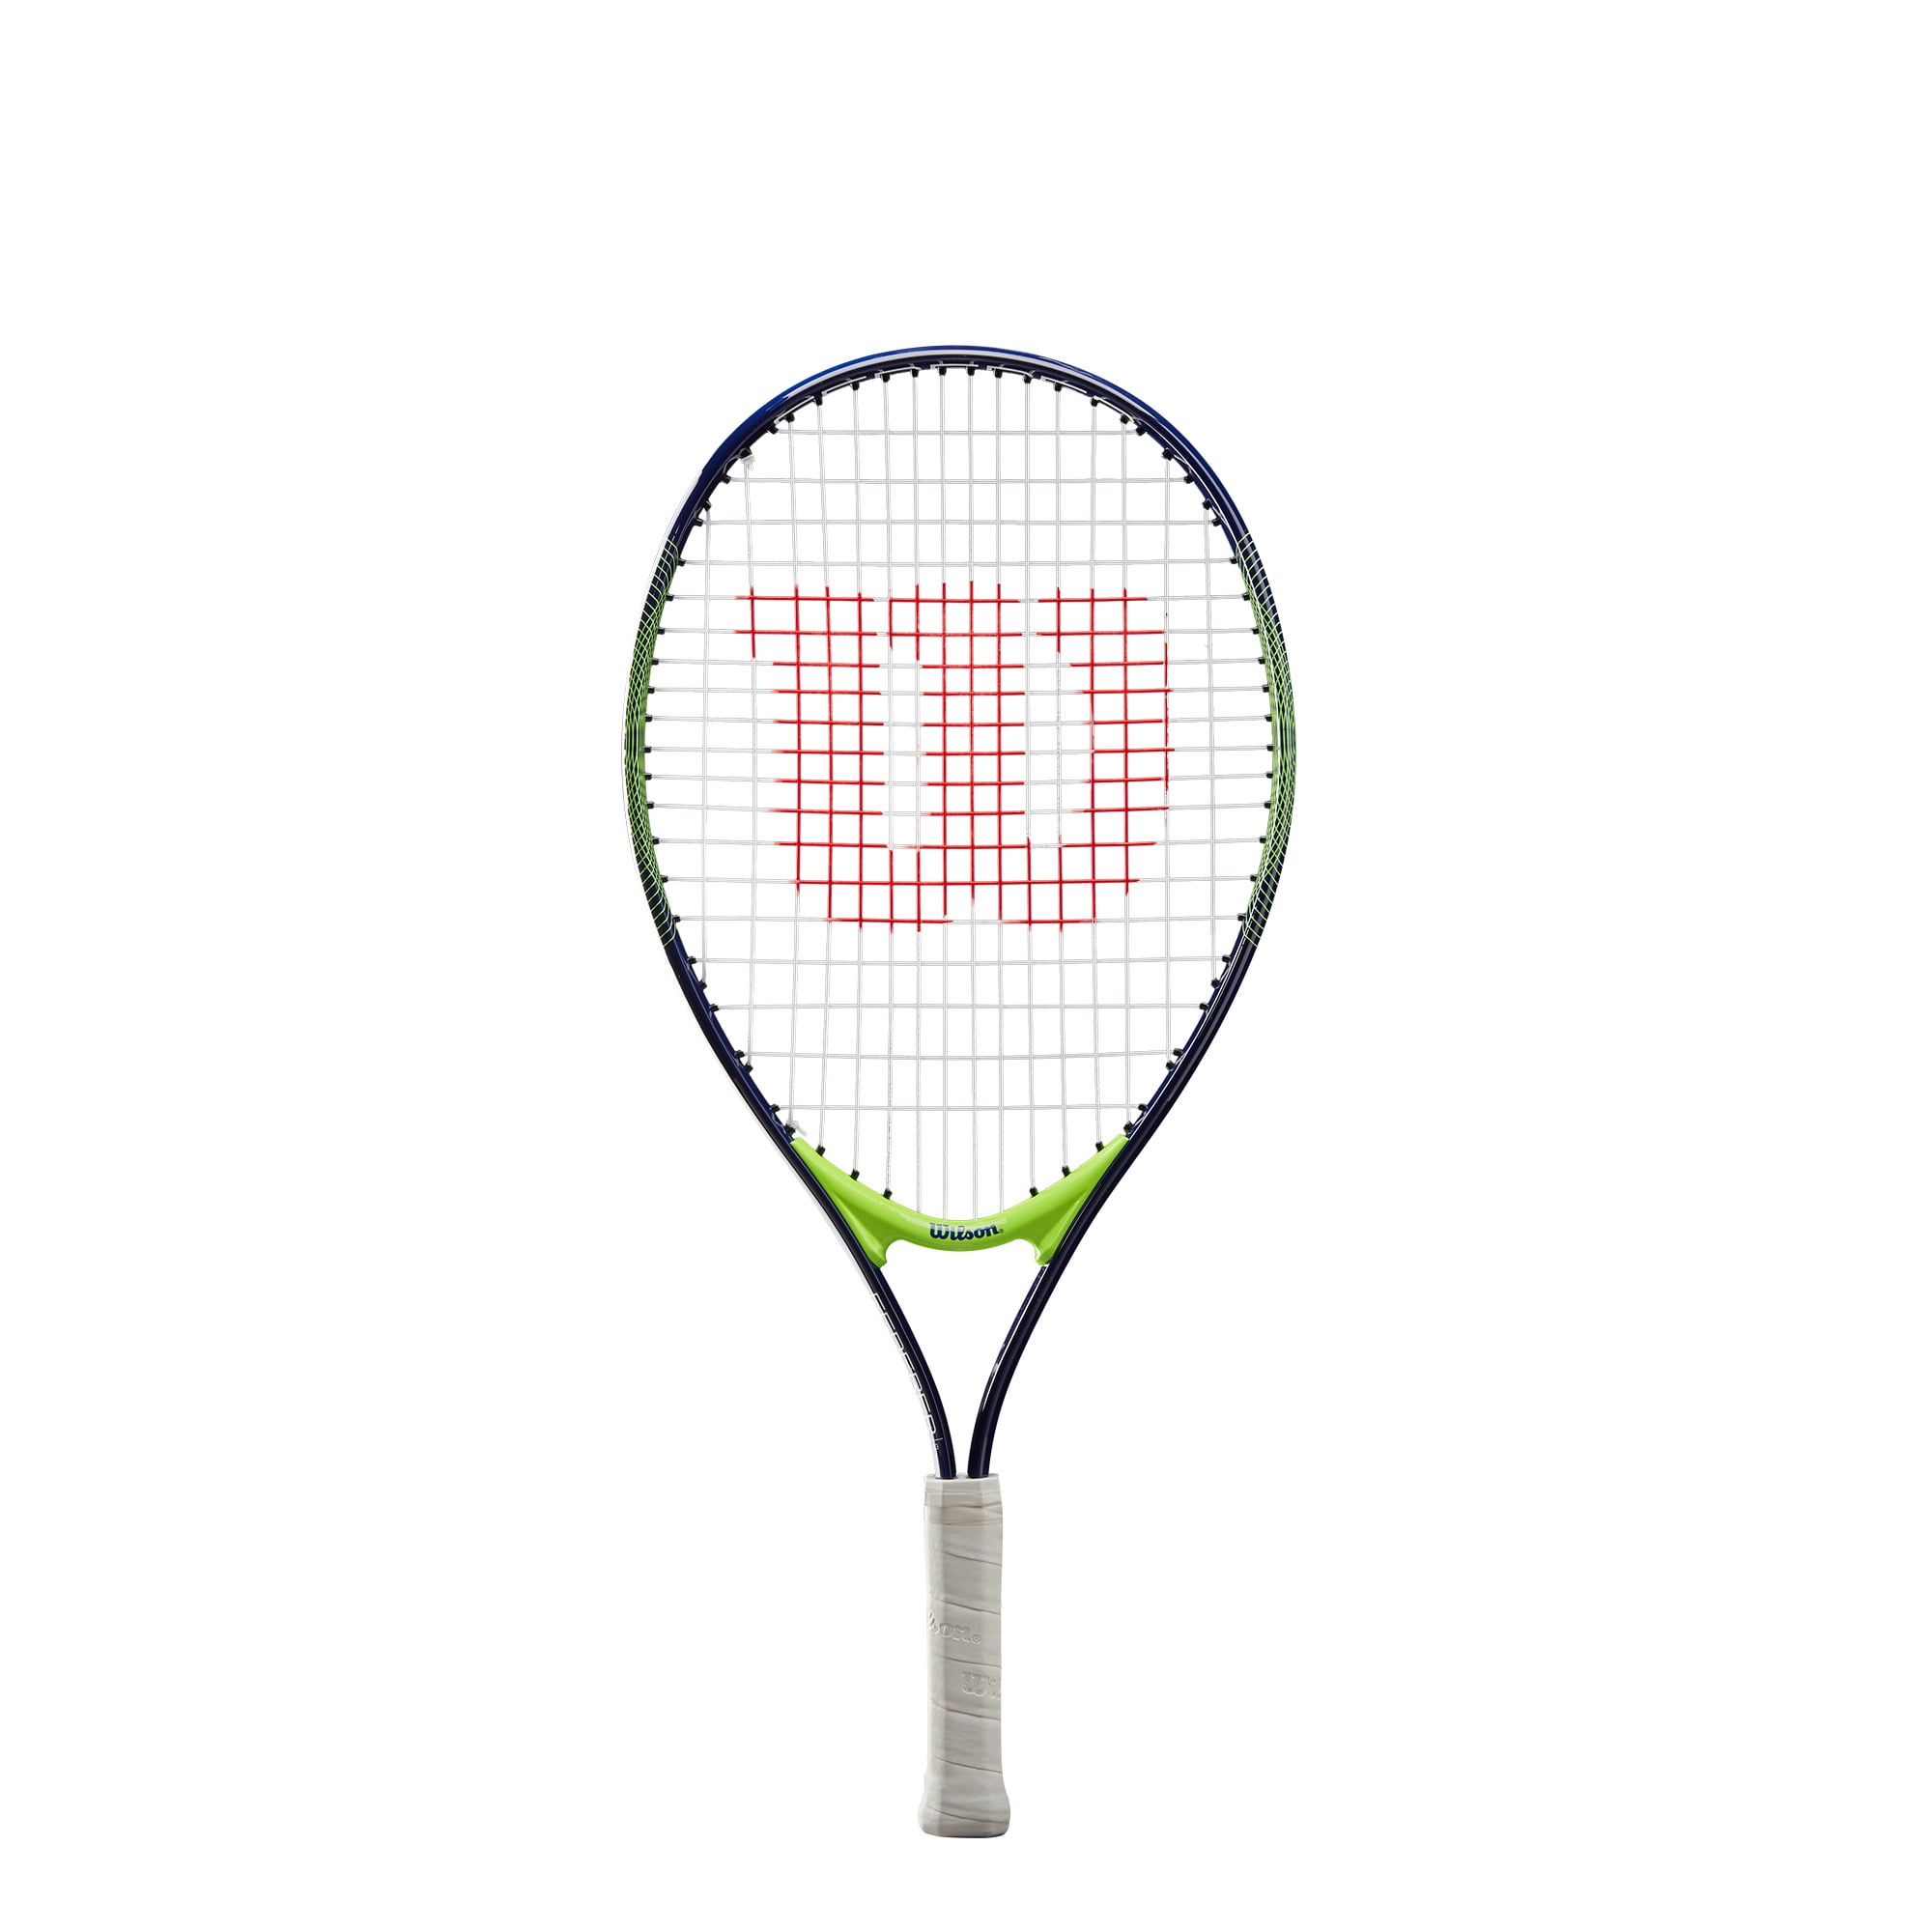 Authorized Dealer w/ Warranty 15 Pro Tennis Racquet Details about   ProKennex Ki Q 